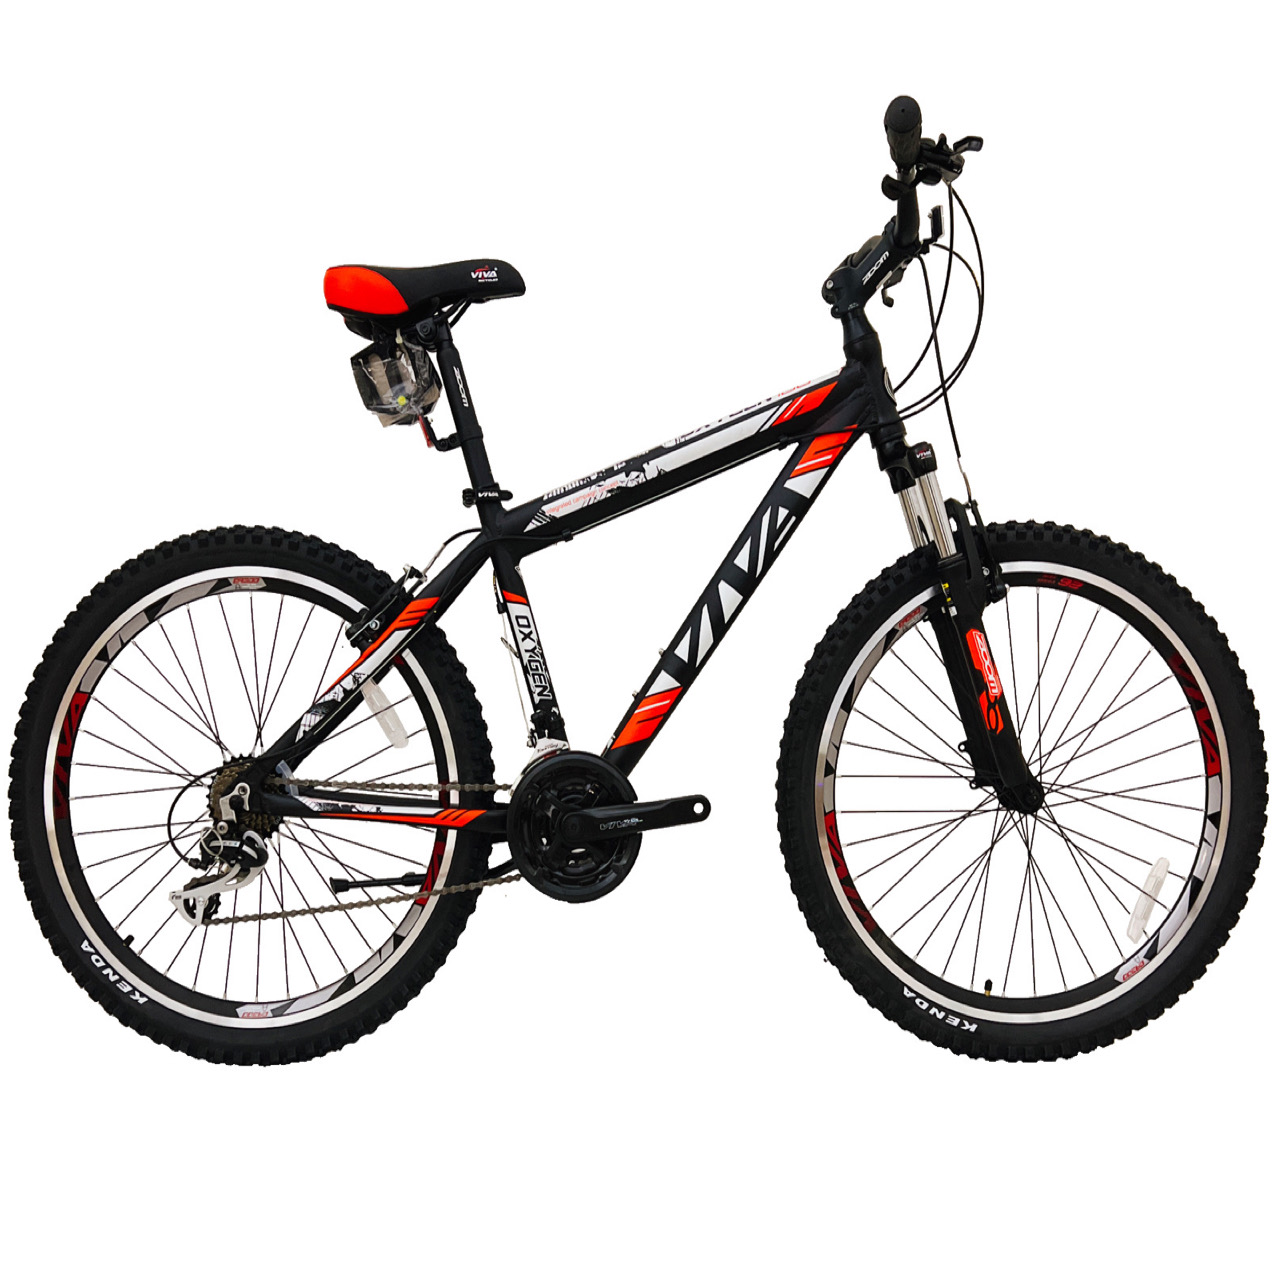 نکته خرید - قیمت روز دوچرخه کوهستان ویوا مدل OXYGEN کد 100 سایز 26 خرید